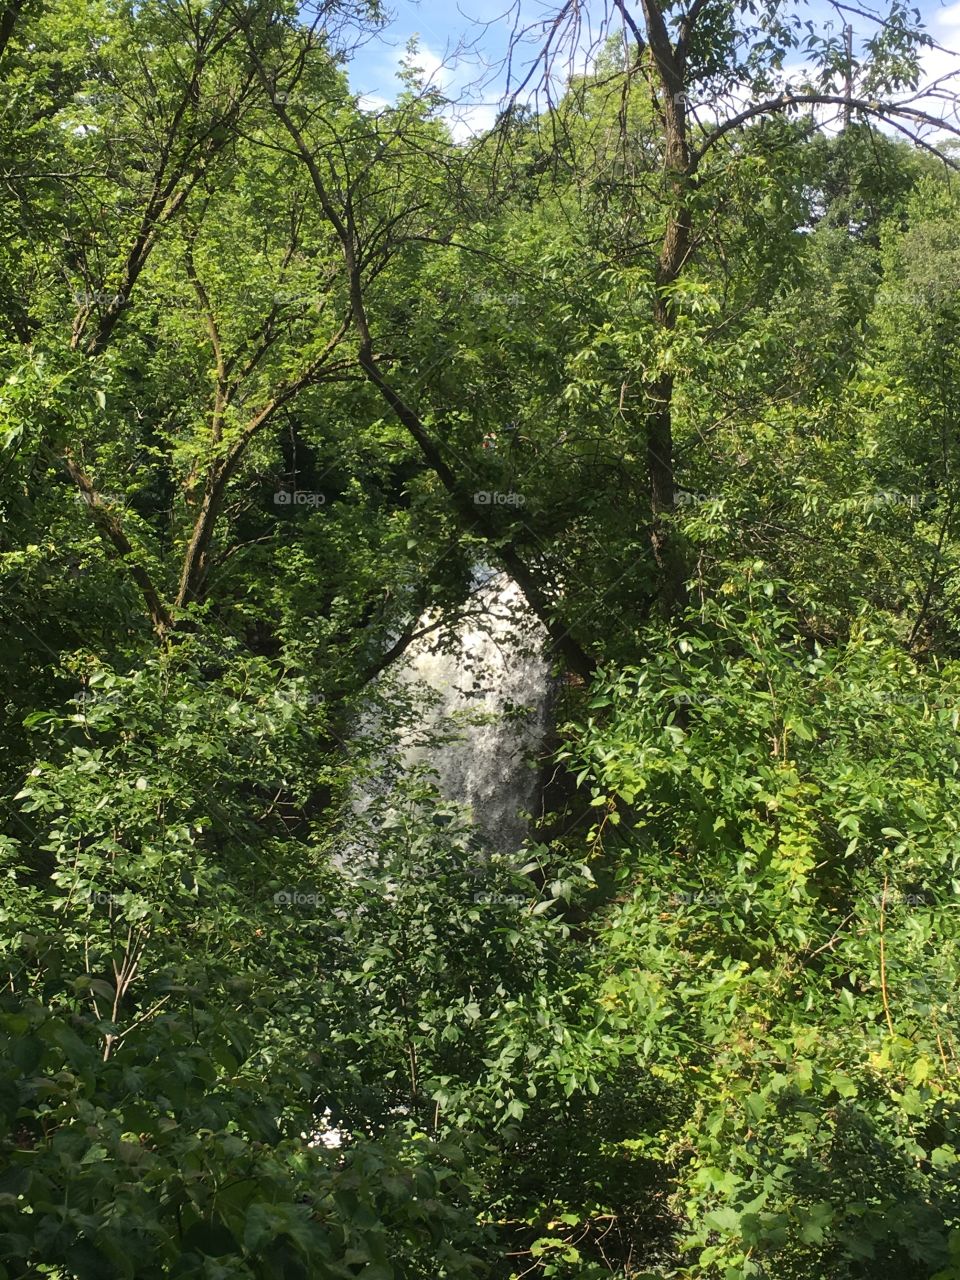 Waterfall hidden behind trees very cool